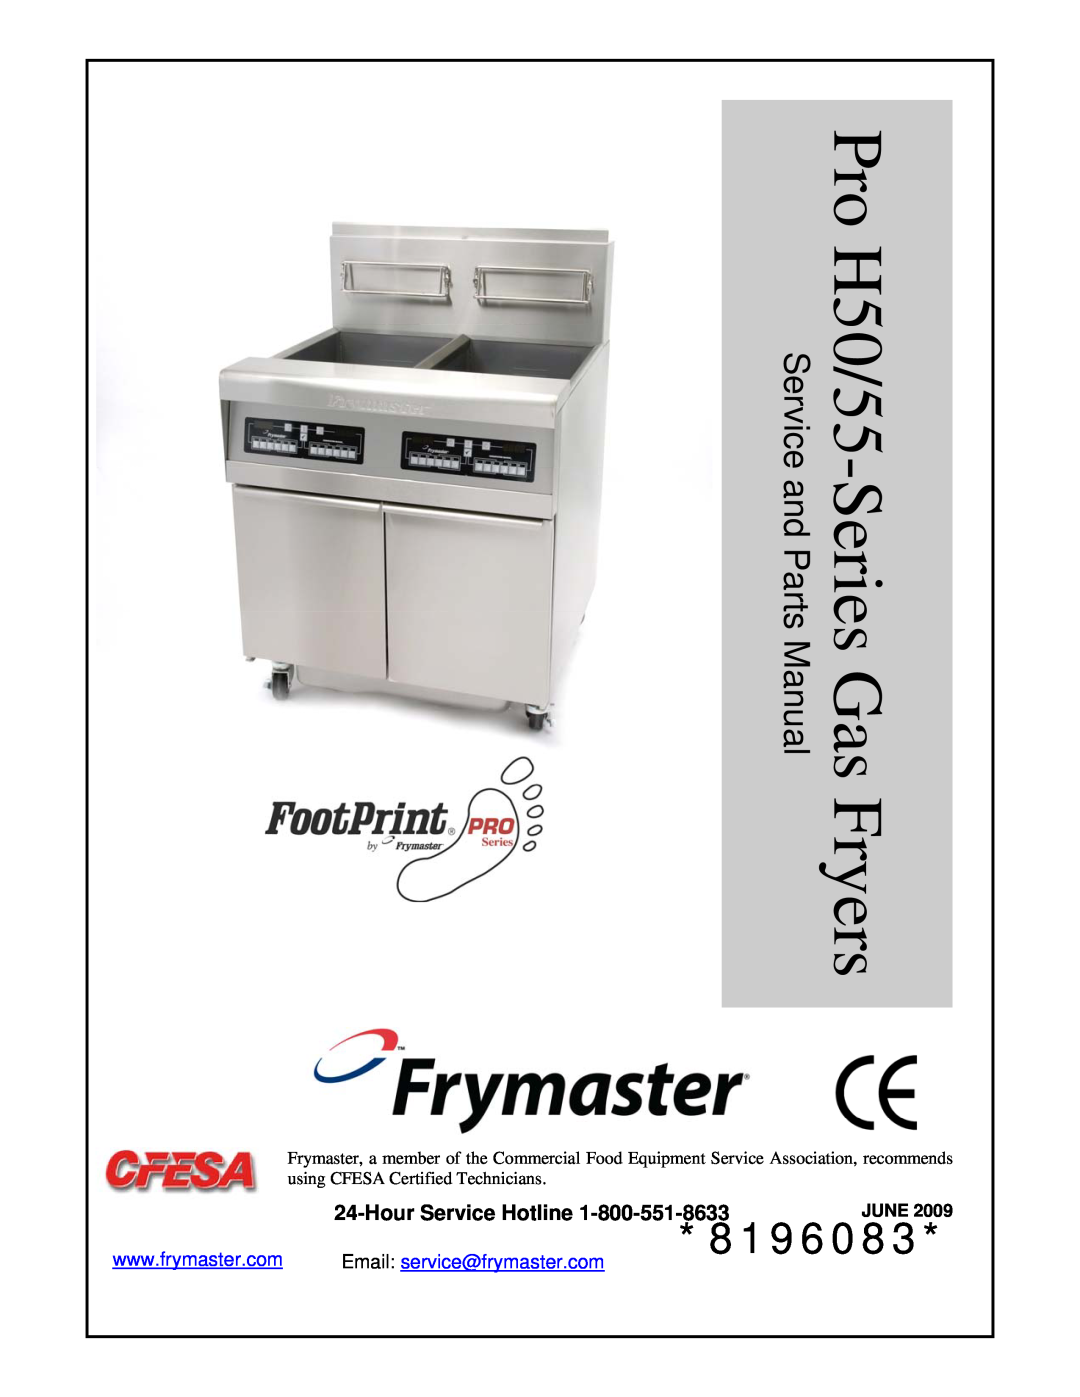 Frymaster H50 manual HourService Hotline, 8196083, Email: service@frymaster.com, June, Service and Parts Manual 